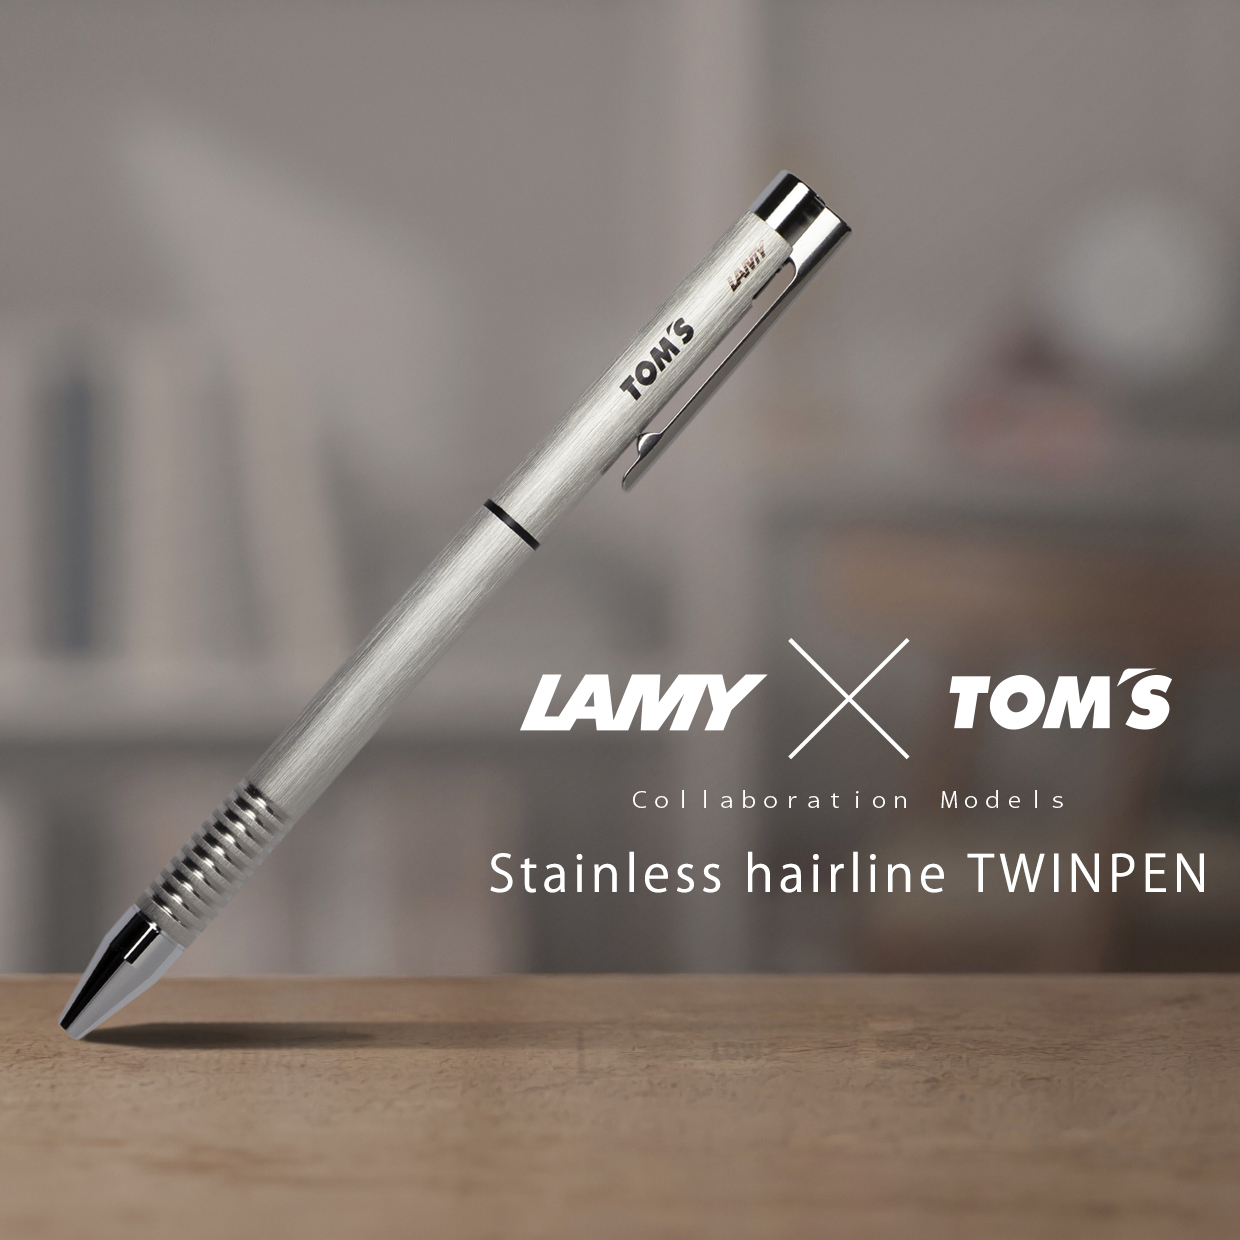 おすすめネット LAMY TWIN PEN ラミー ツインペン CP1 ペンシル 0.5MM 油性 ボールペン L656 筆記用具 文房具 ブランド  シャープペンシル シャーペン 多機能ペン 複合ペン ブラック 黒 送料無料